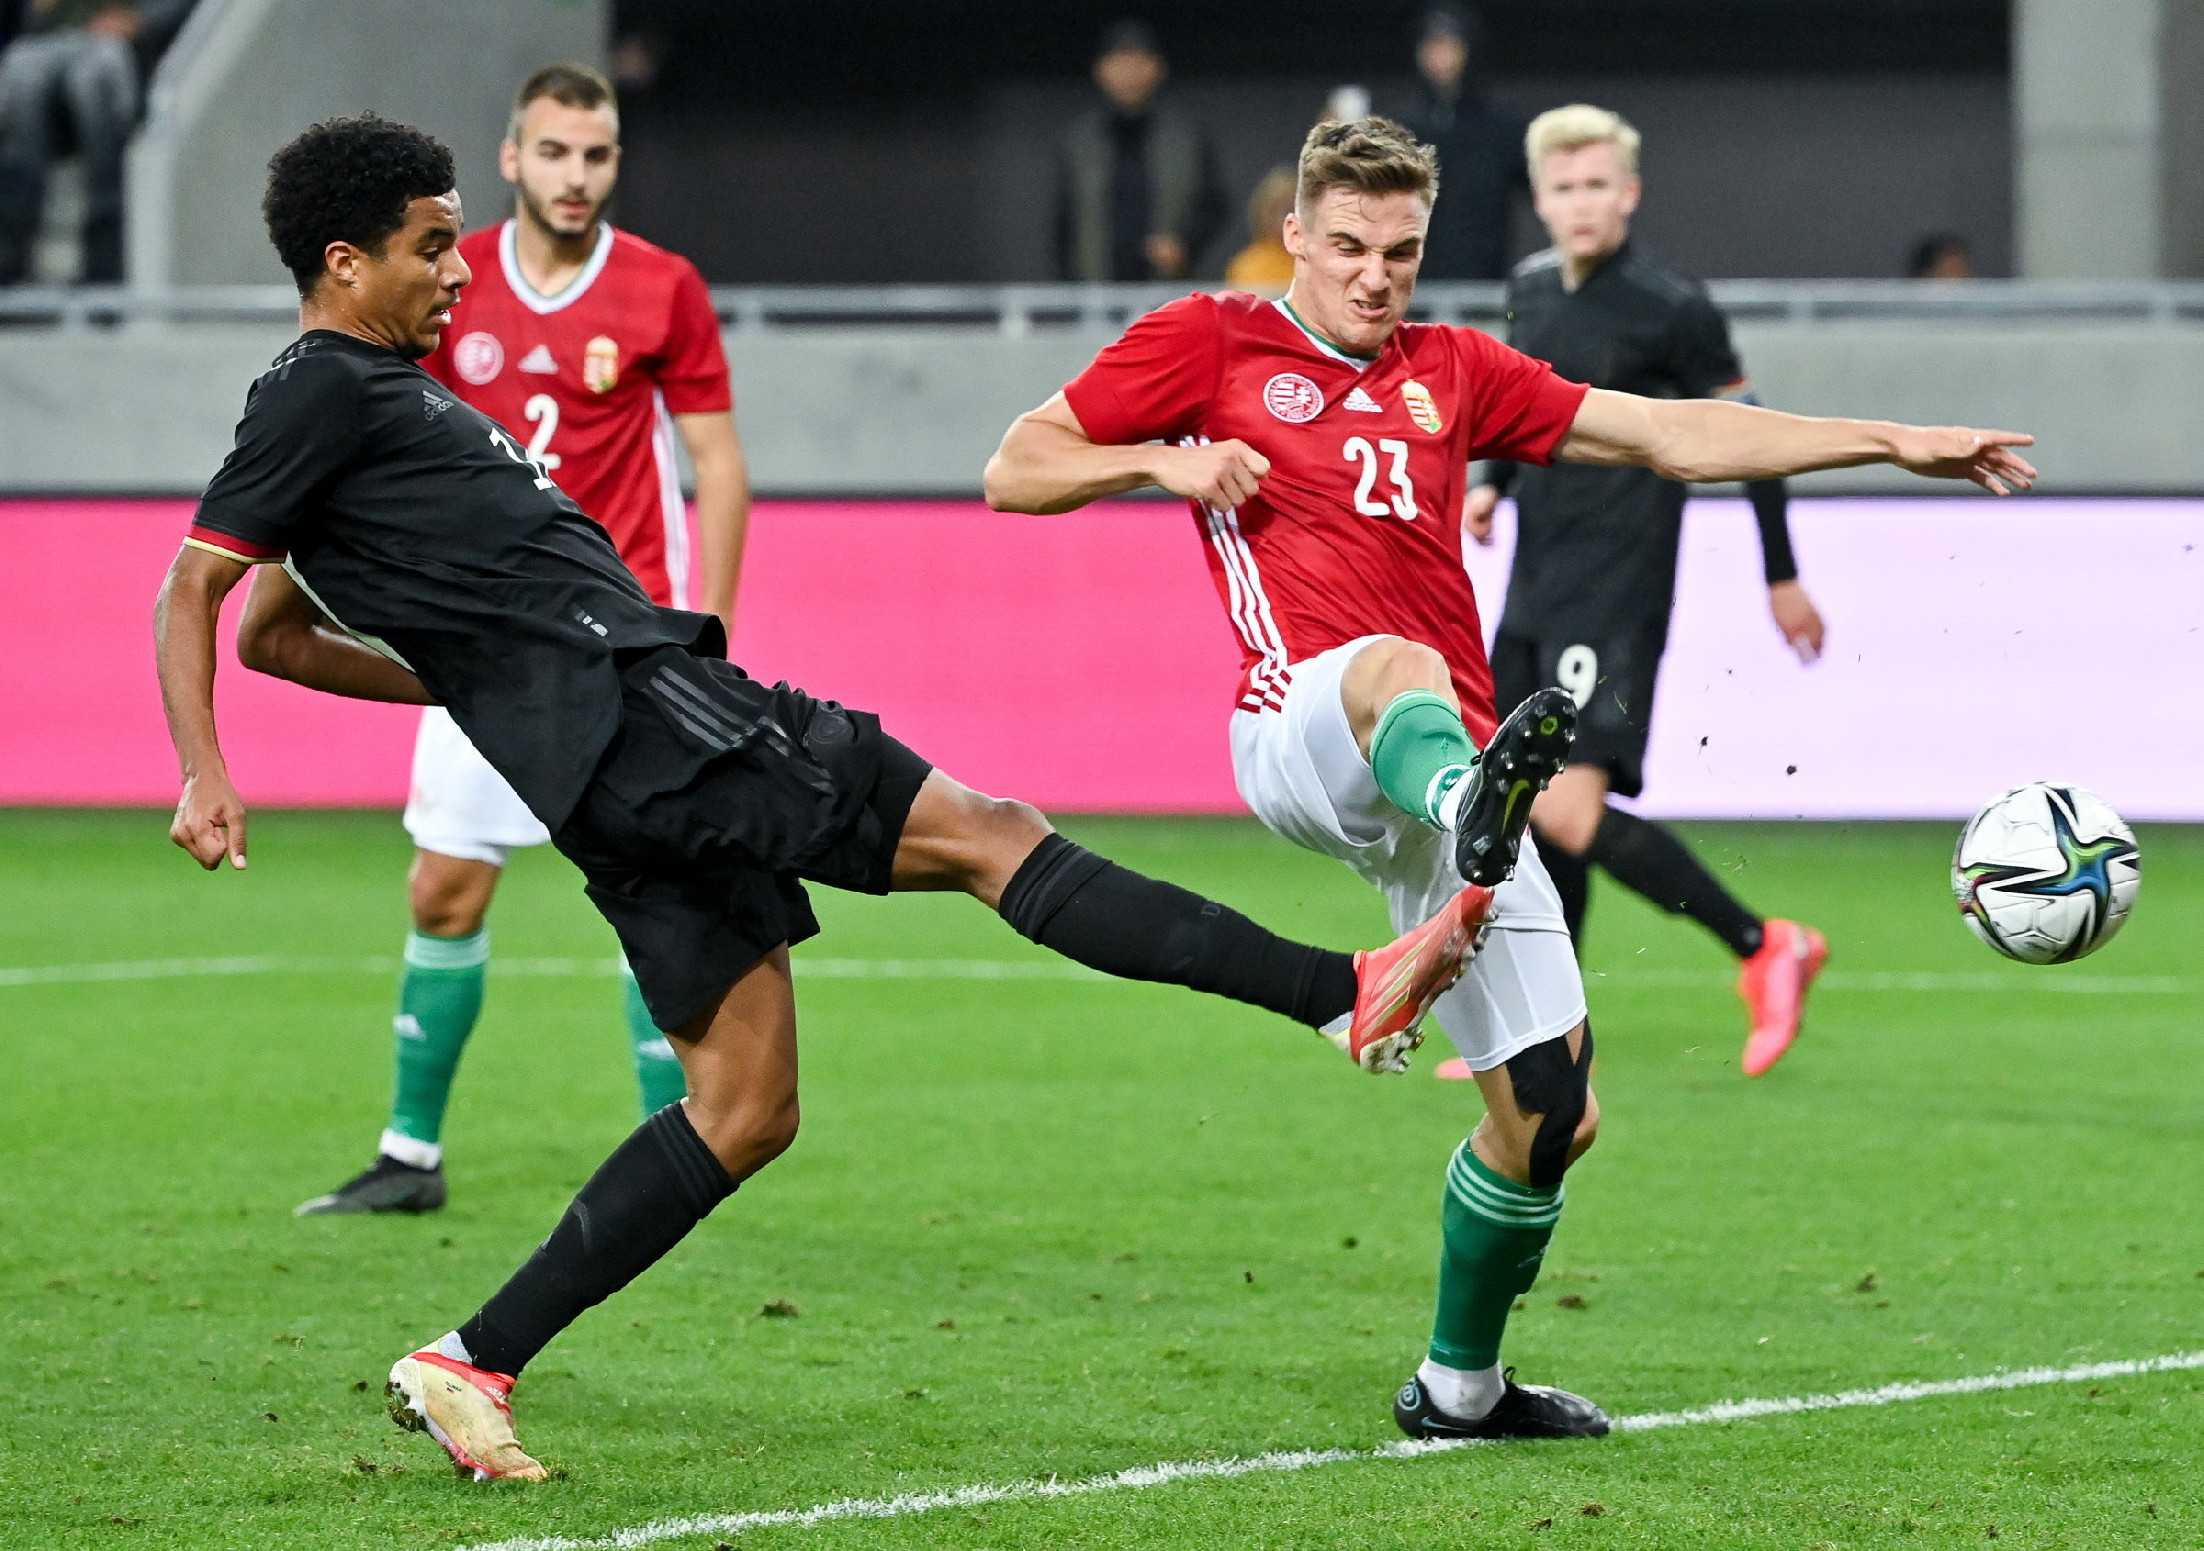 Kikapott az U21-es magyar csapat a németektől az Eb-selejtezőn